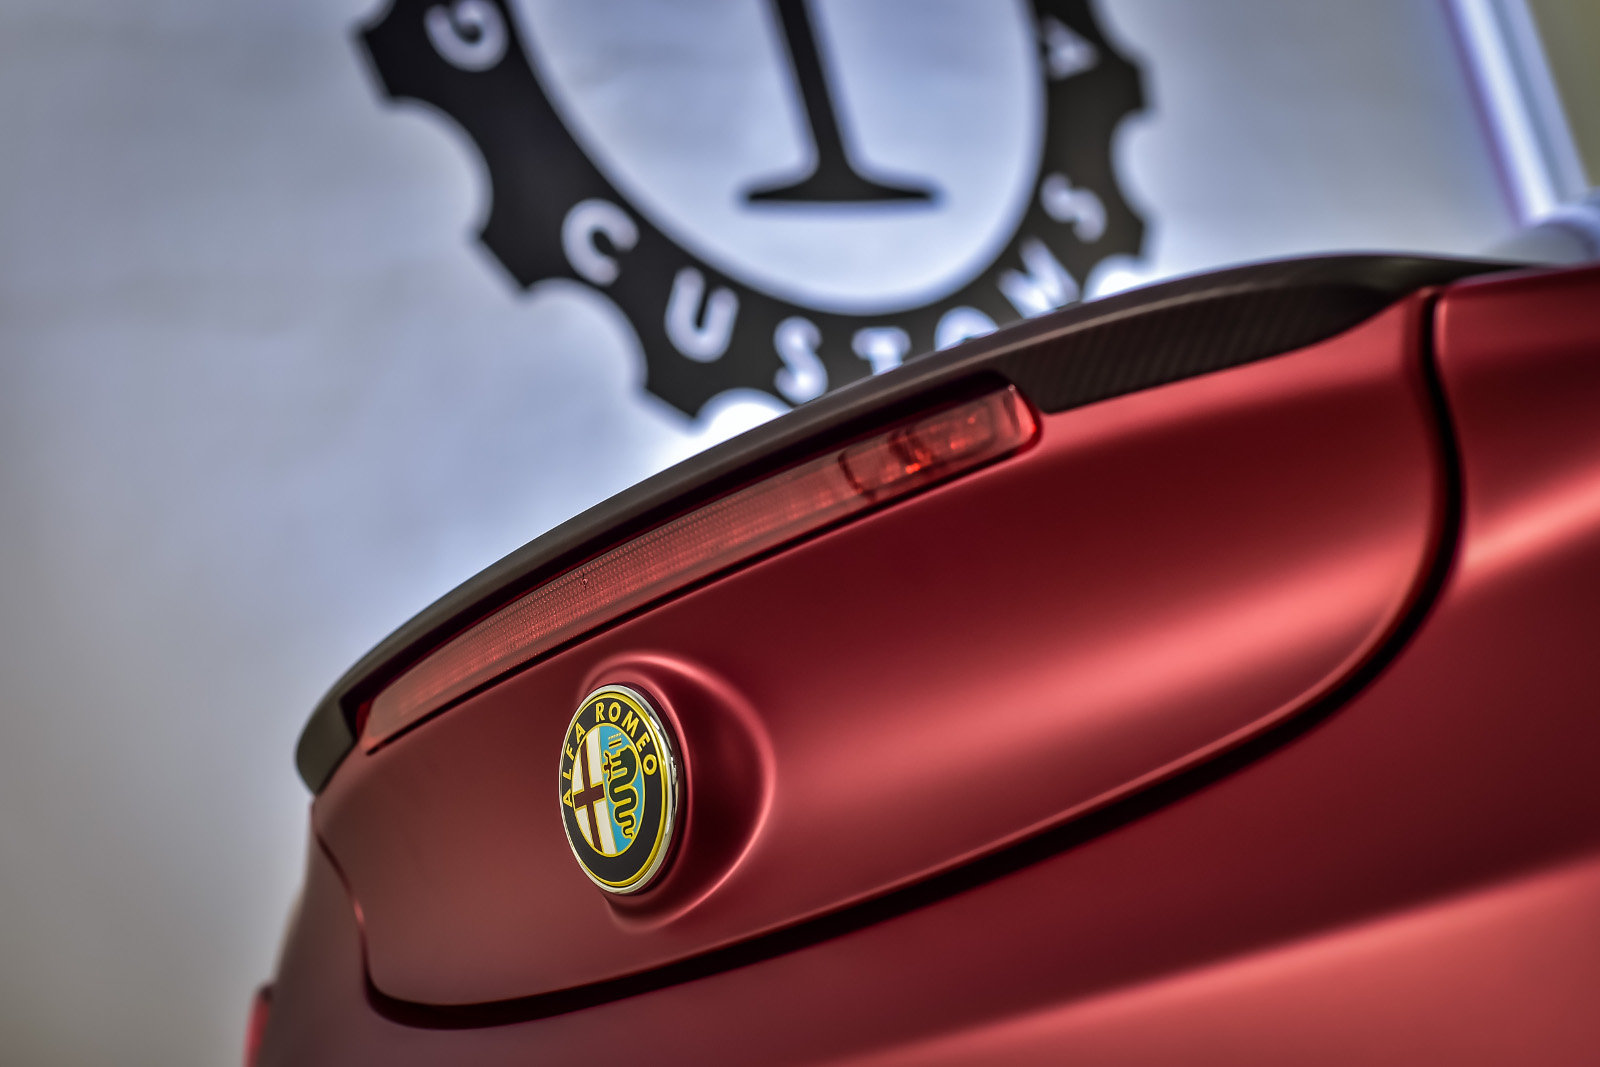 Vyjímající se logo automobilky, Alfa Romeo 4C La Furiosa.